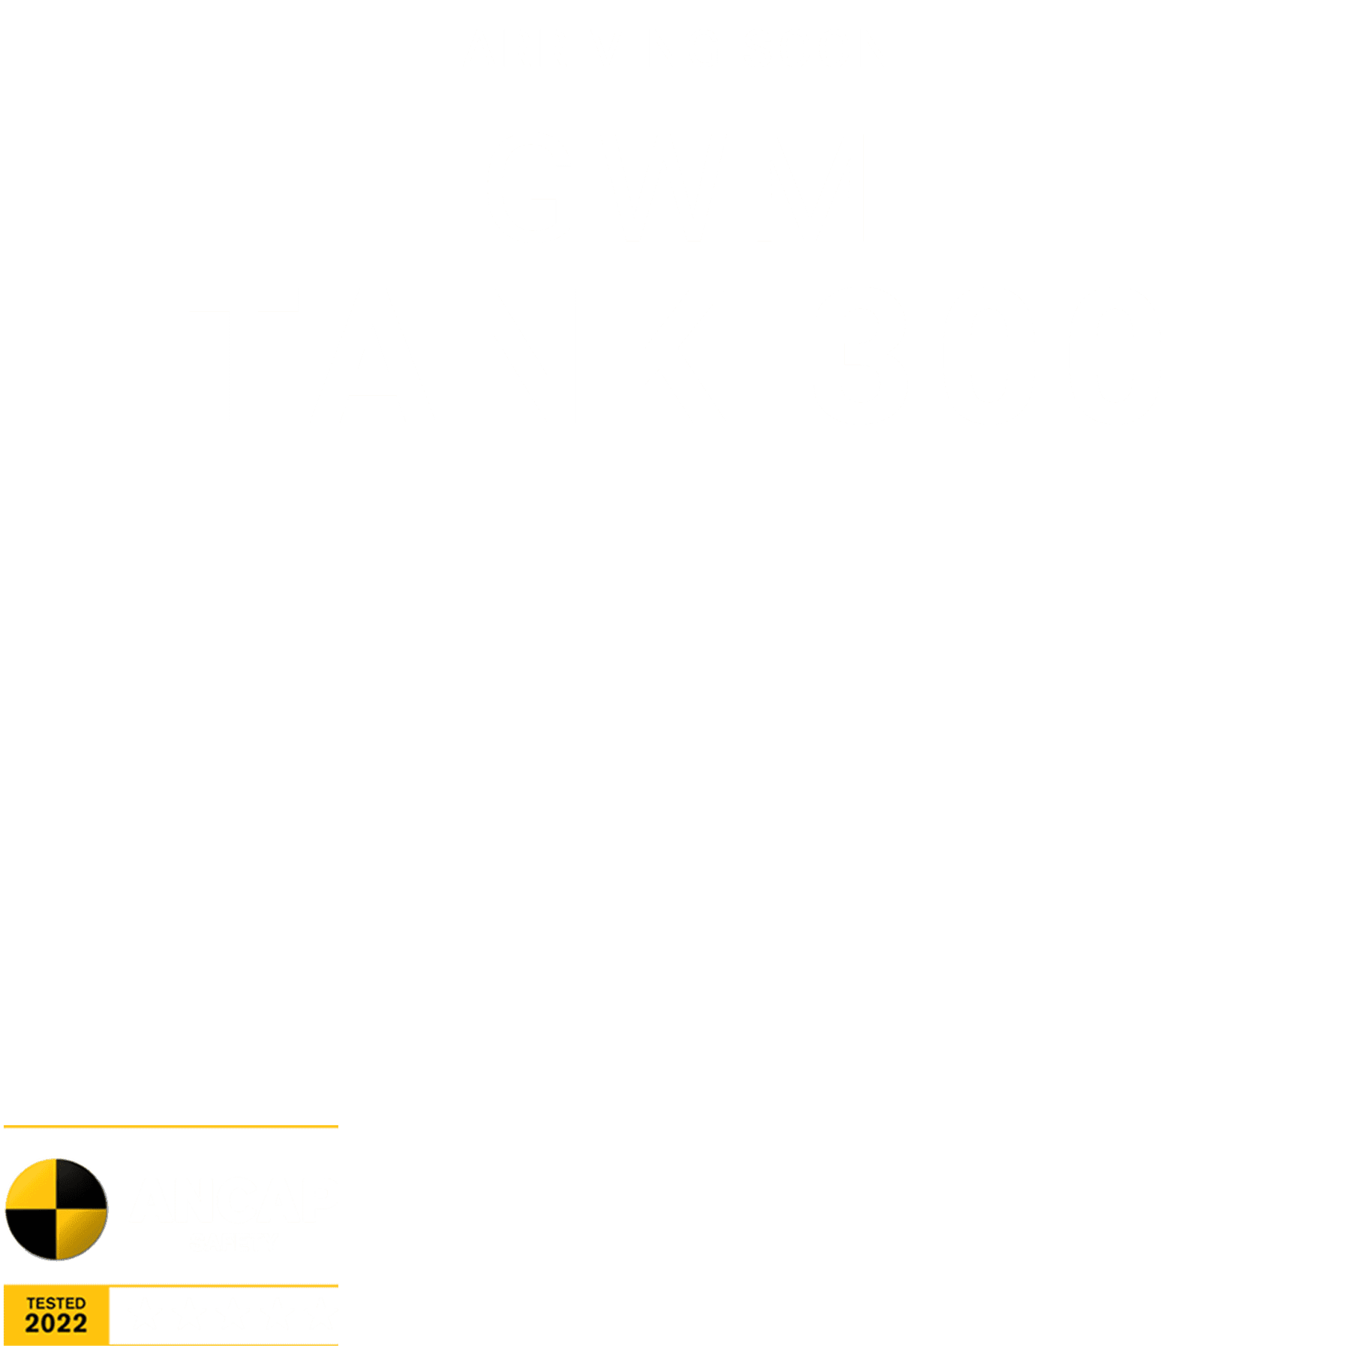 THE GWM TANK 300